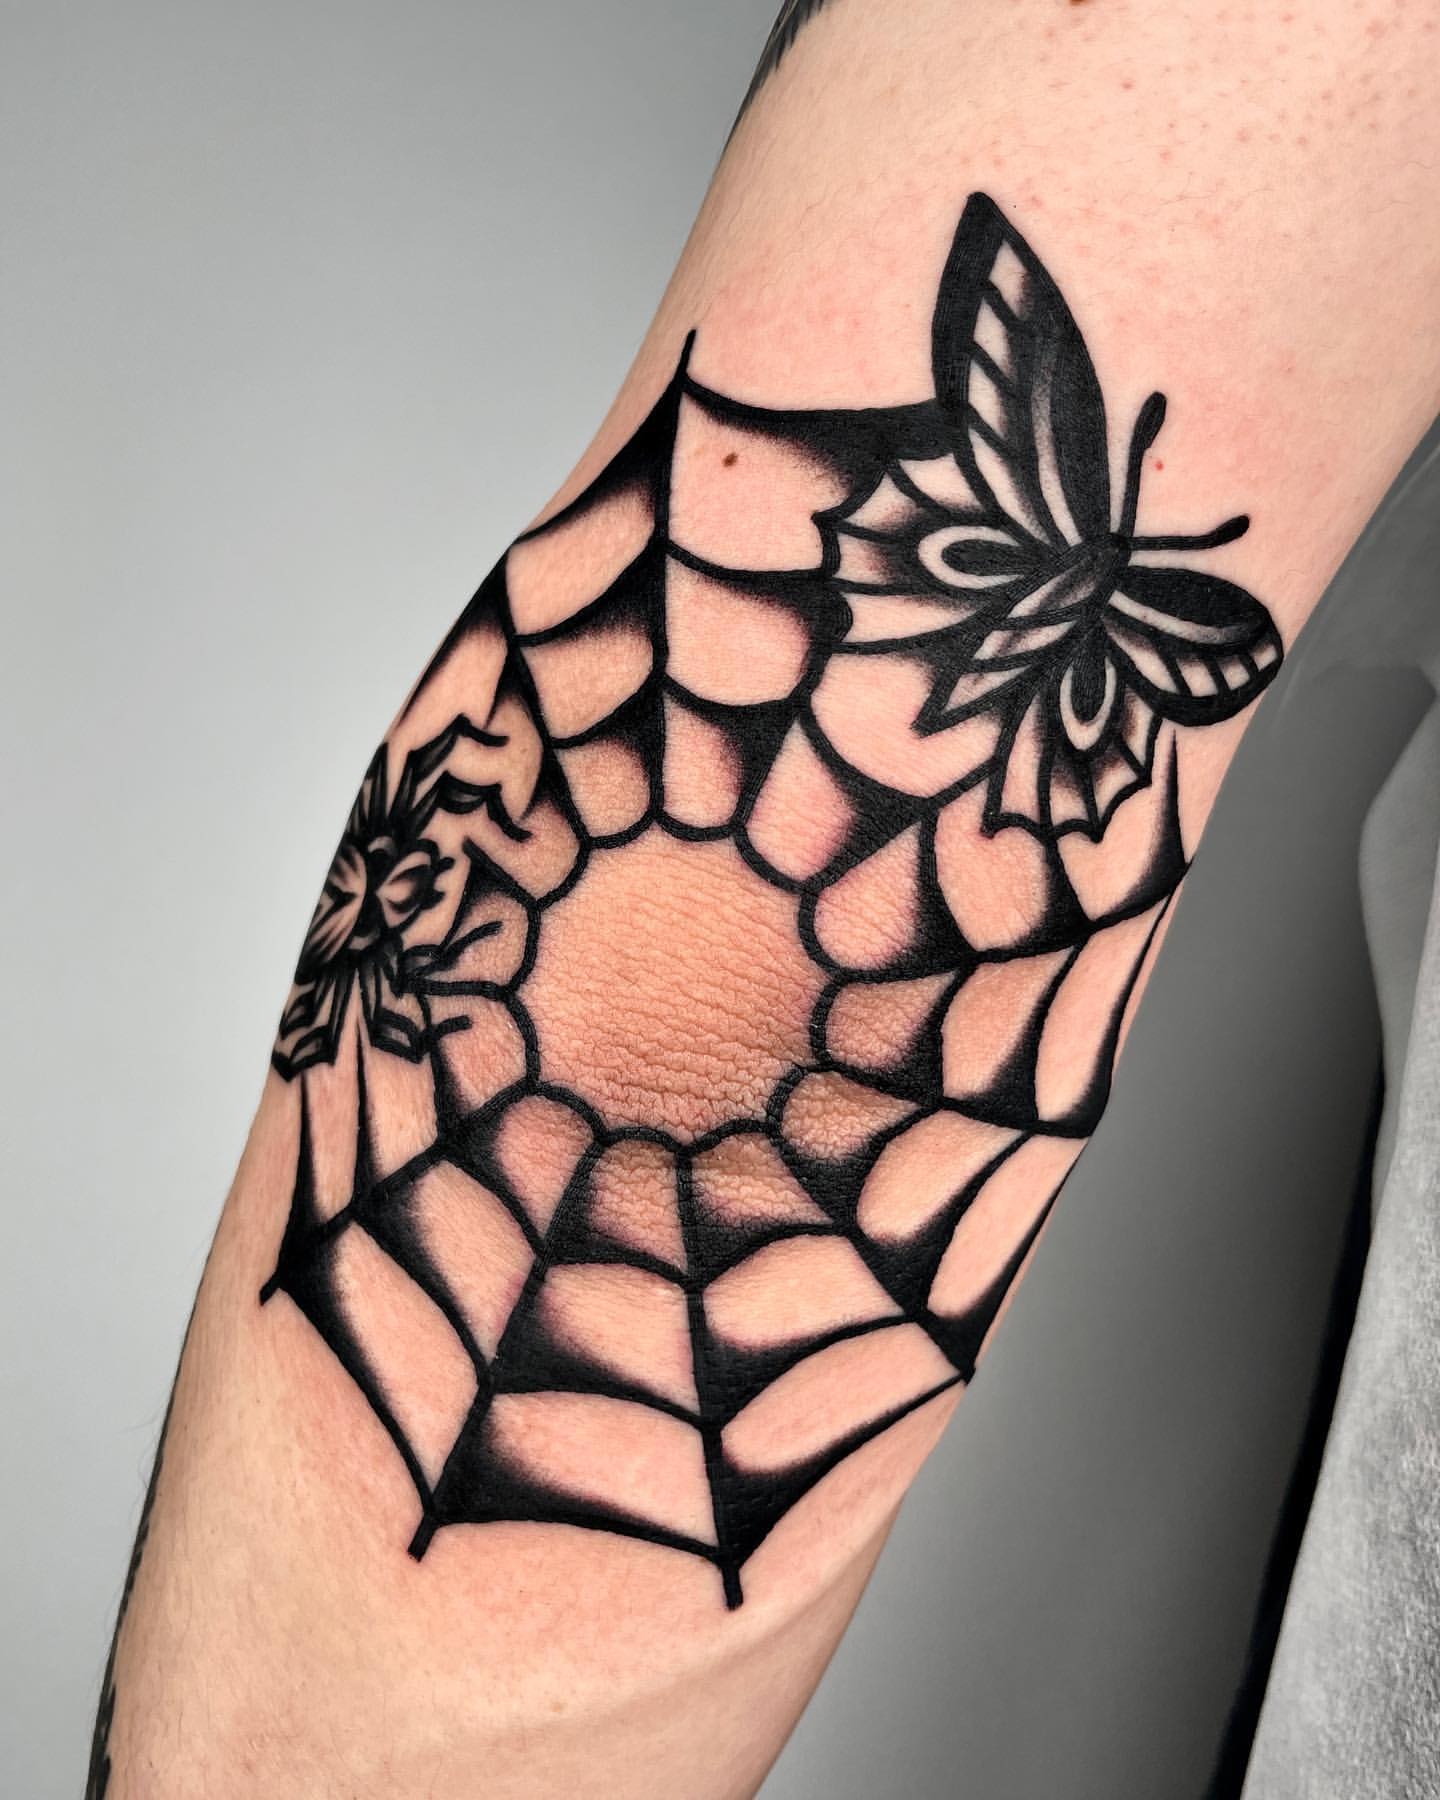 Hawk Tattoo Studio | Floral Elbow Tattoo @hawktattooofficial @dlf_cyberhub  . . . #flowertattoo #tattoo #tattoos #flowers #ink #tattooartist #inked  #floral... | Instagram